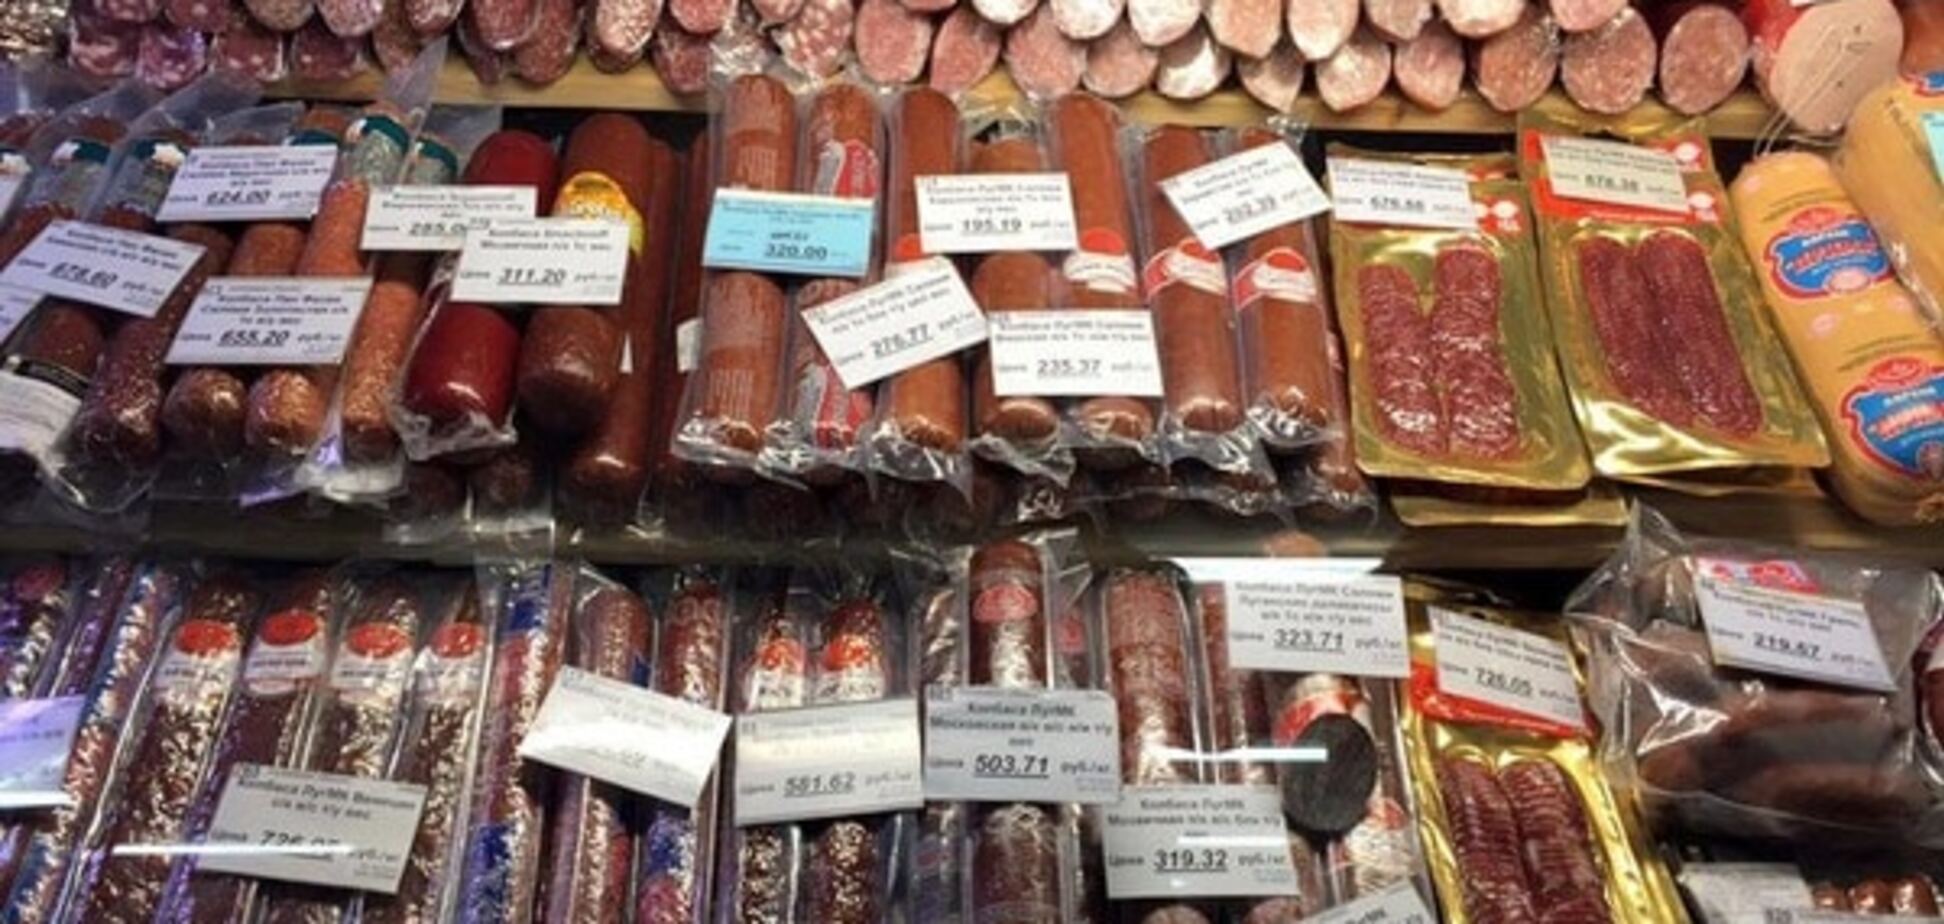 Луганчанку шокировали ценники 'русского мира' в магазинах: опубликованы фото